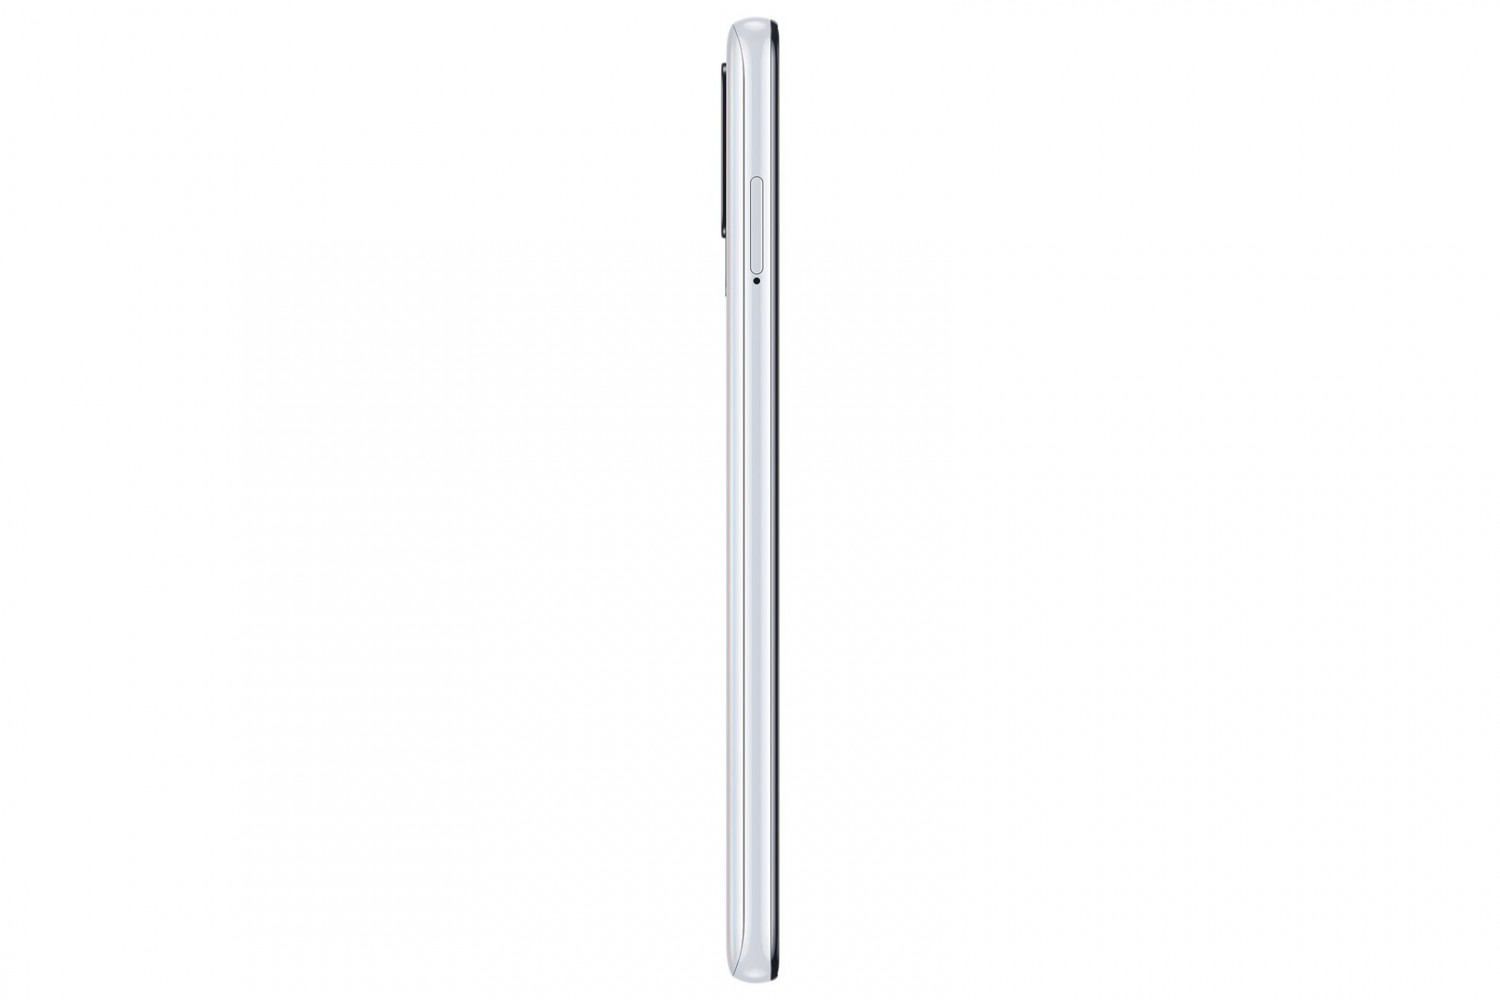 Samsung Galaxy A21s (SM-217) 4GB/64GB bílá